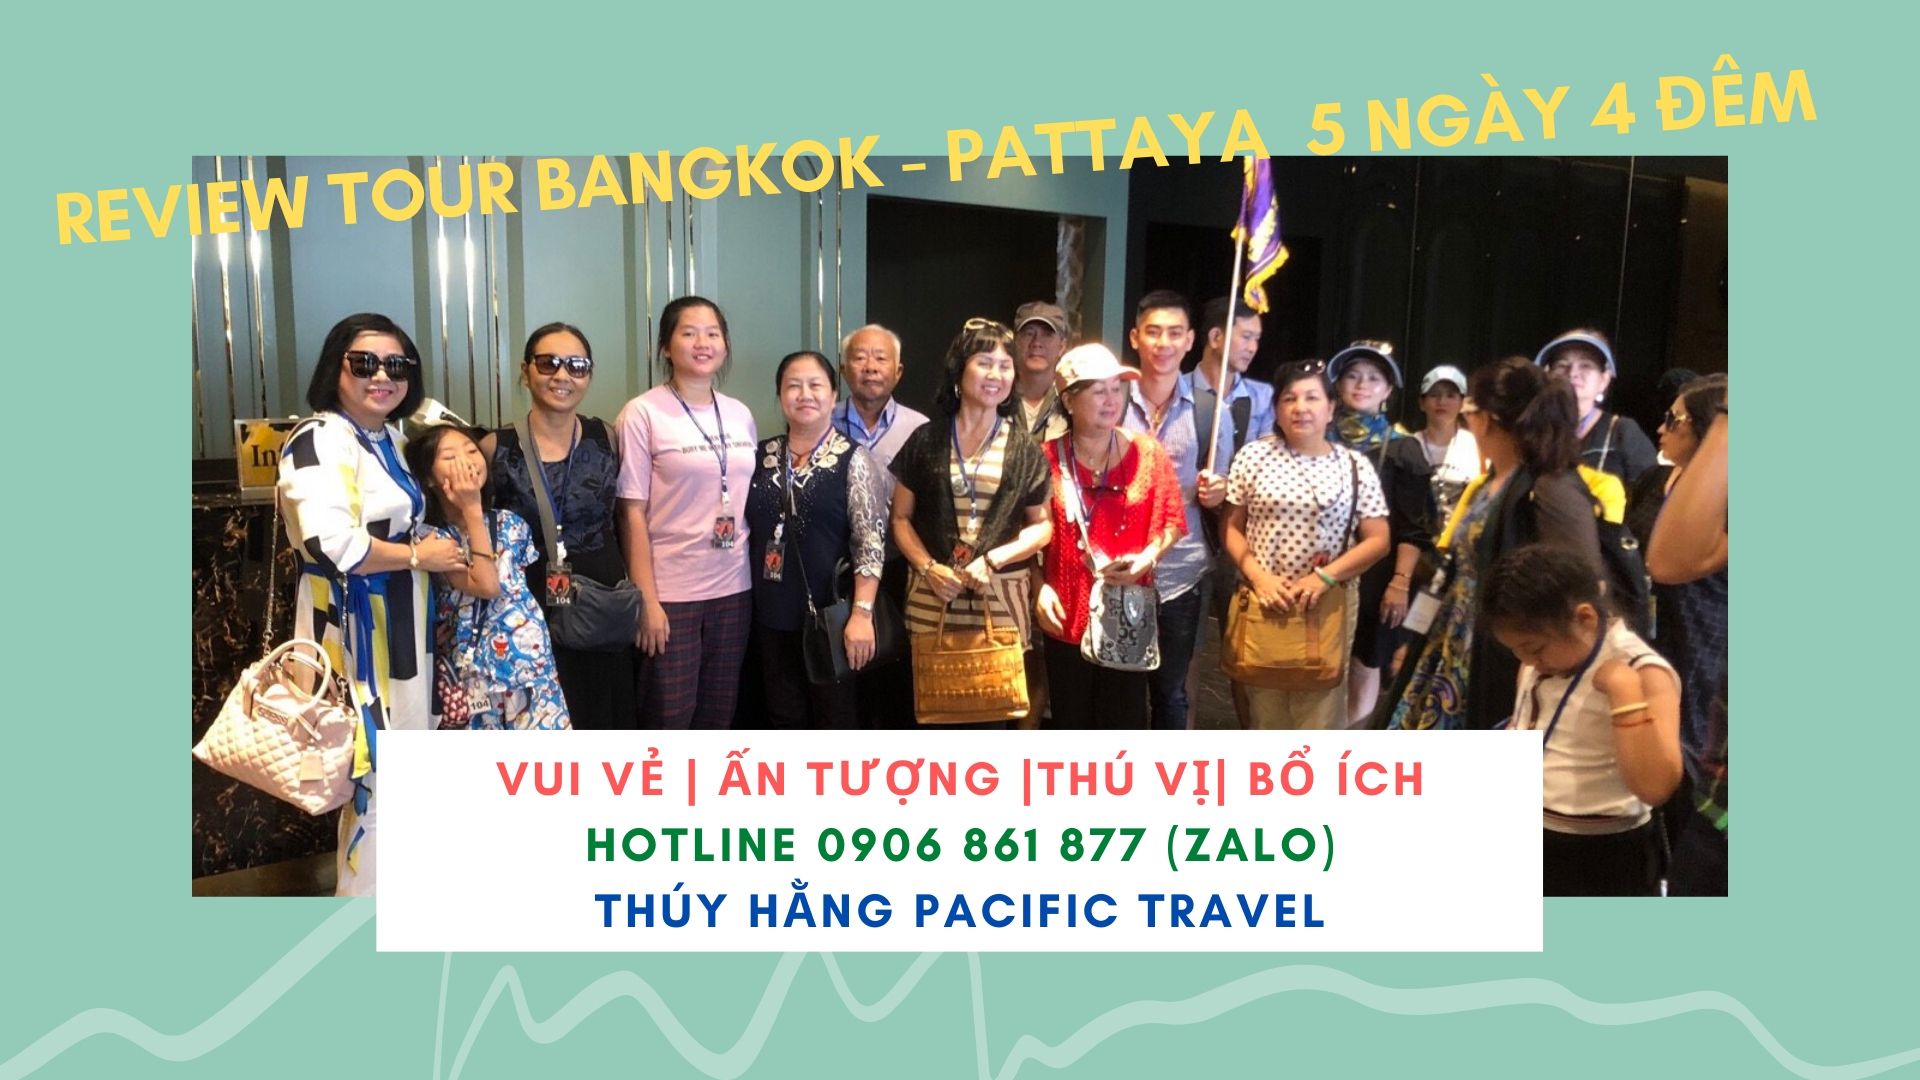 Review Tour Bangkok- Pattaya 5 Ngày 4 Đêm